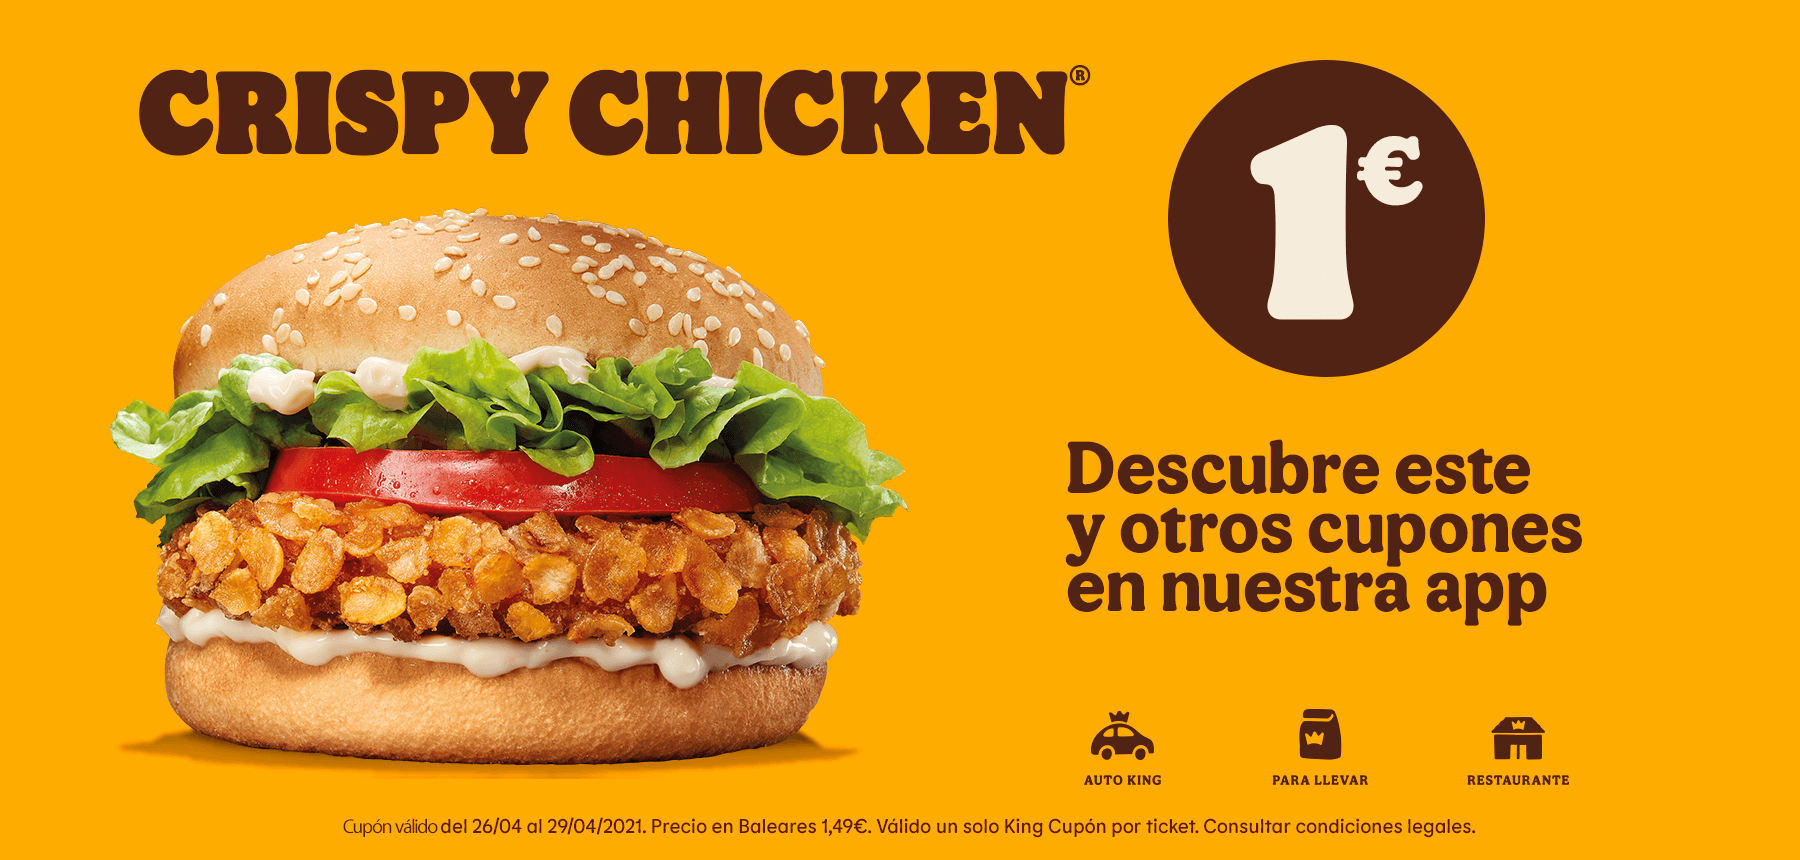 Crispy Chicken por 1€ (1,49€ en Baleares) en Burger King (válido en Auto King, para llevar y en restaurante)